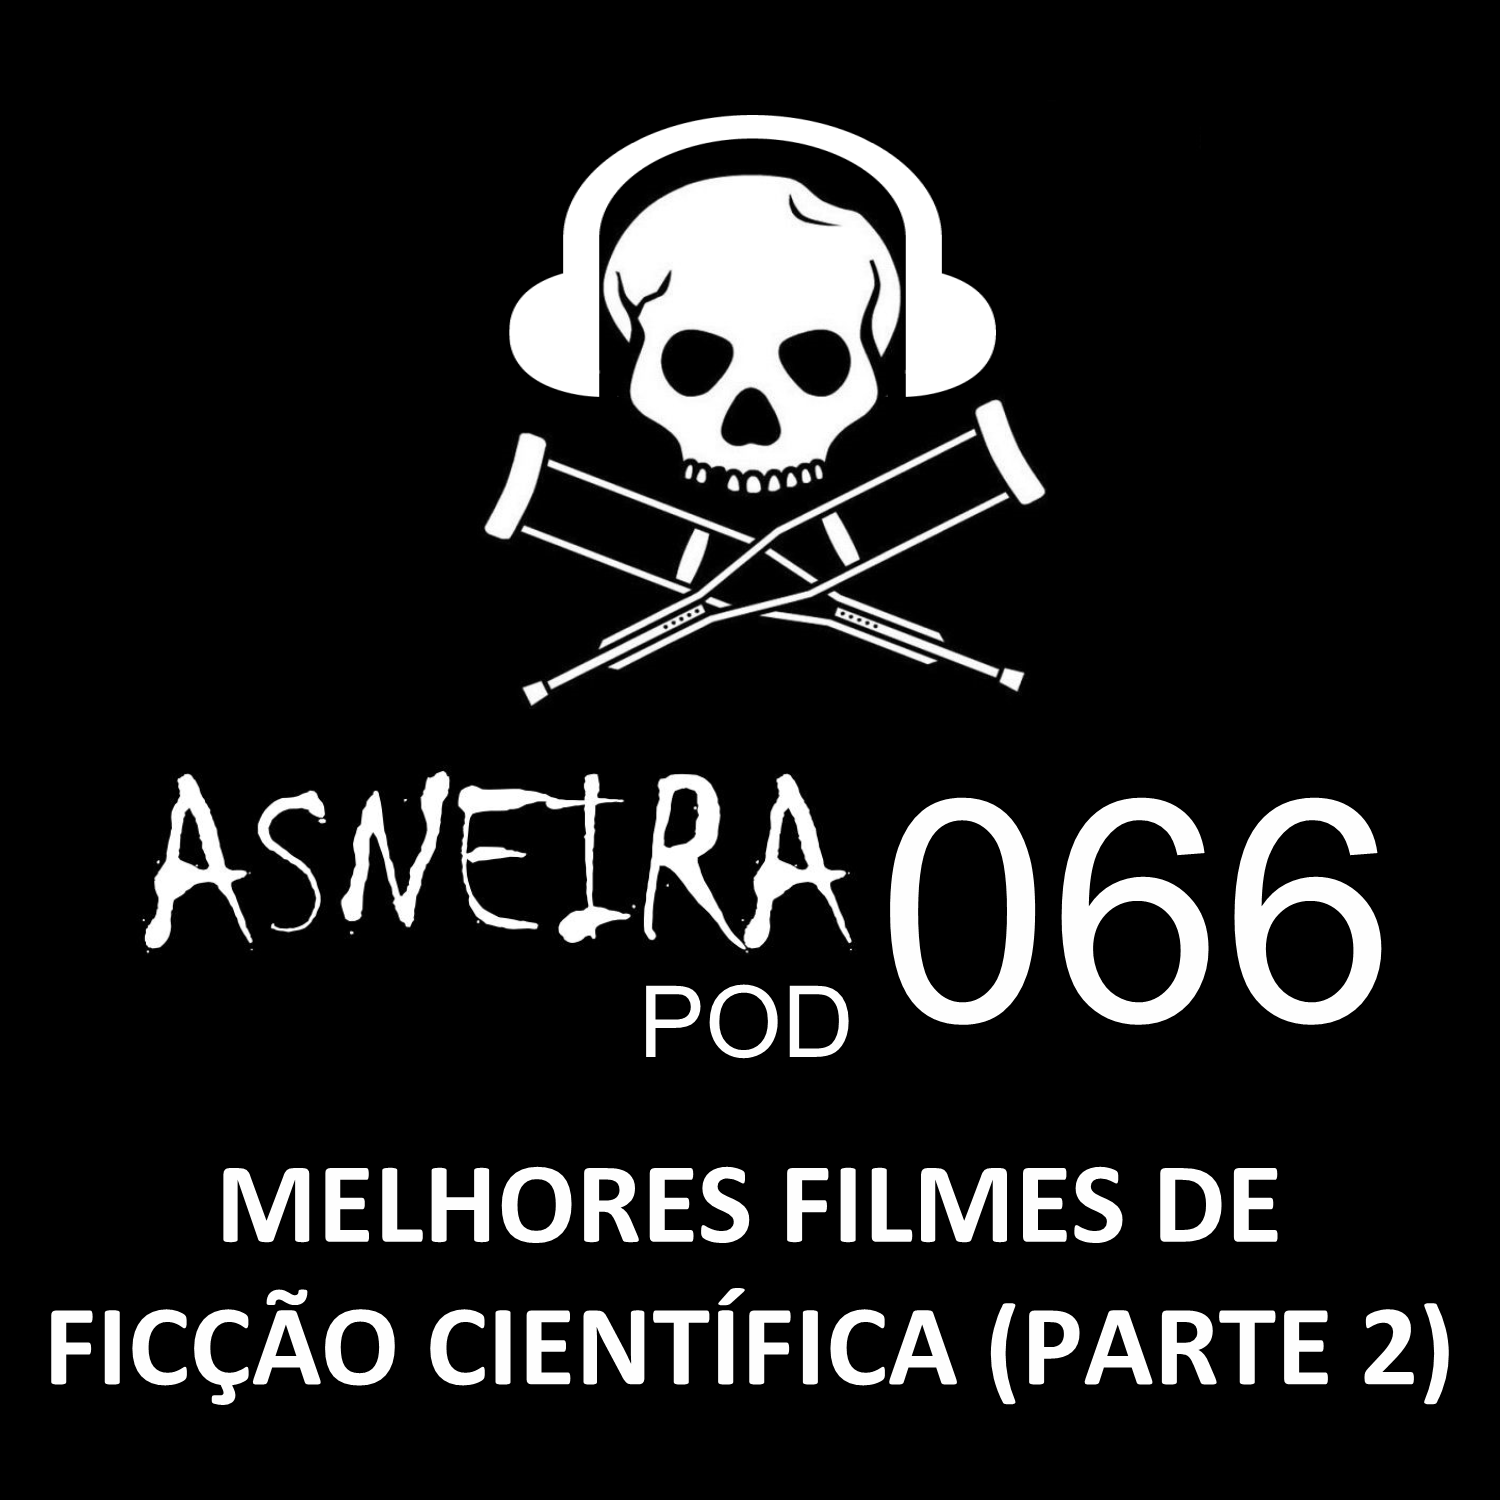 AsneiraPOD 066 – Melhores filmes de ficção científica (Parte 2)